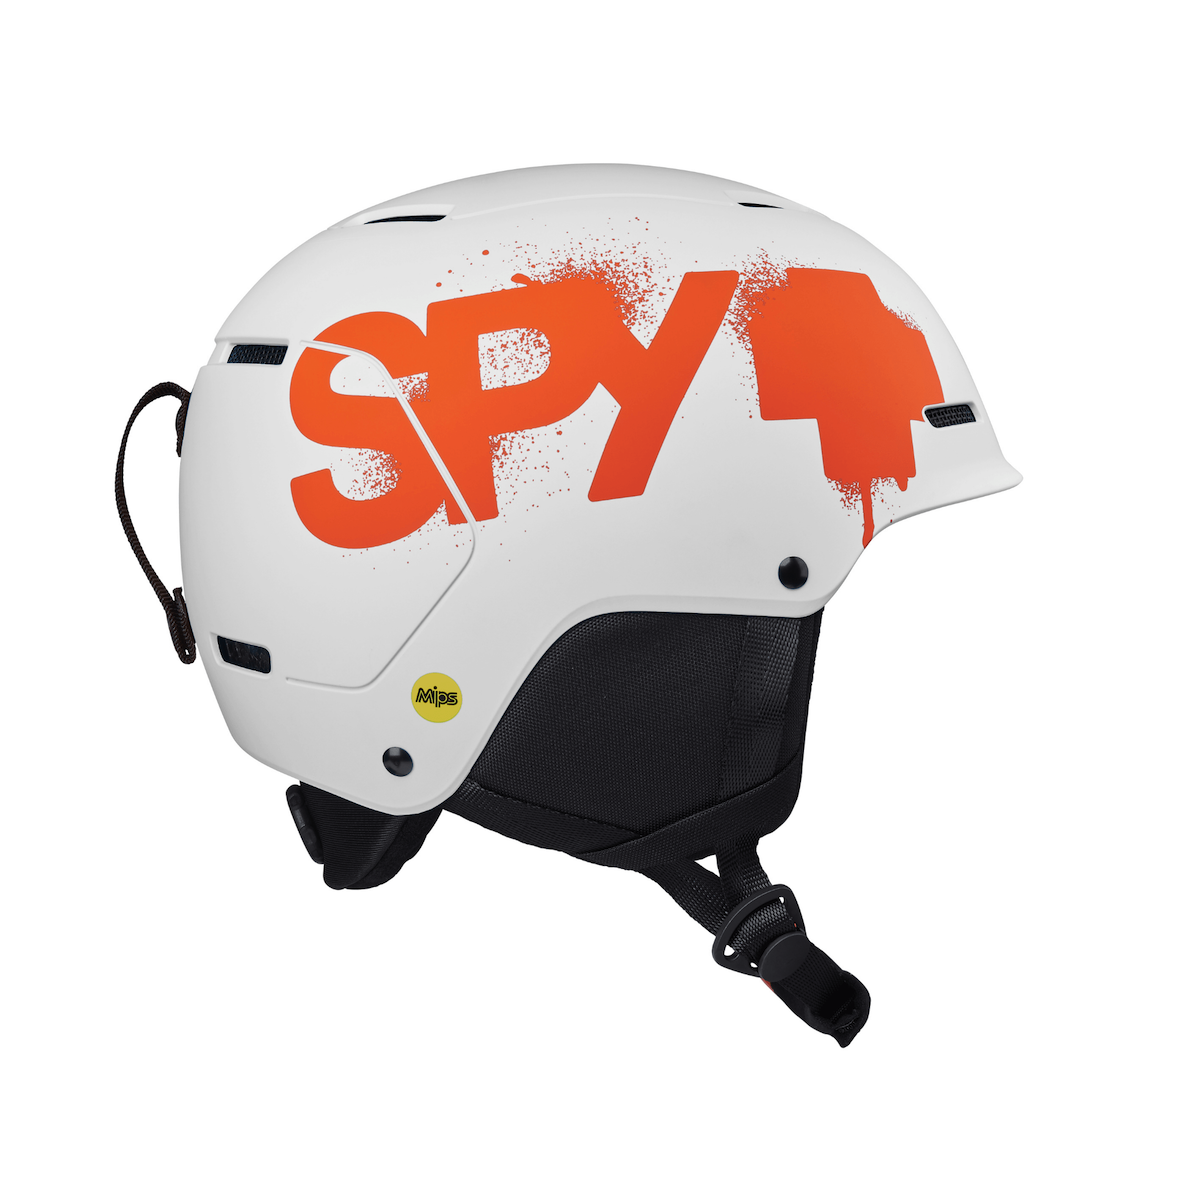 SPY LIL ASTRONOMIC SNOW helmet - matte white/orange splatter logo